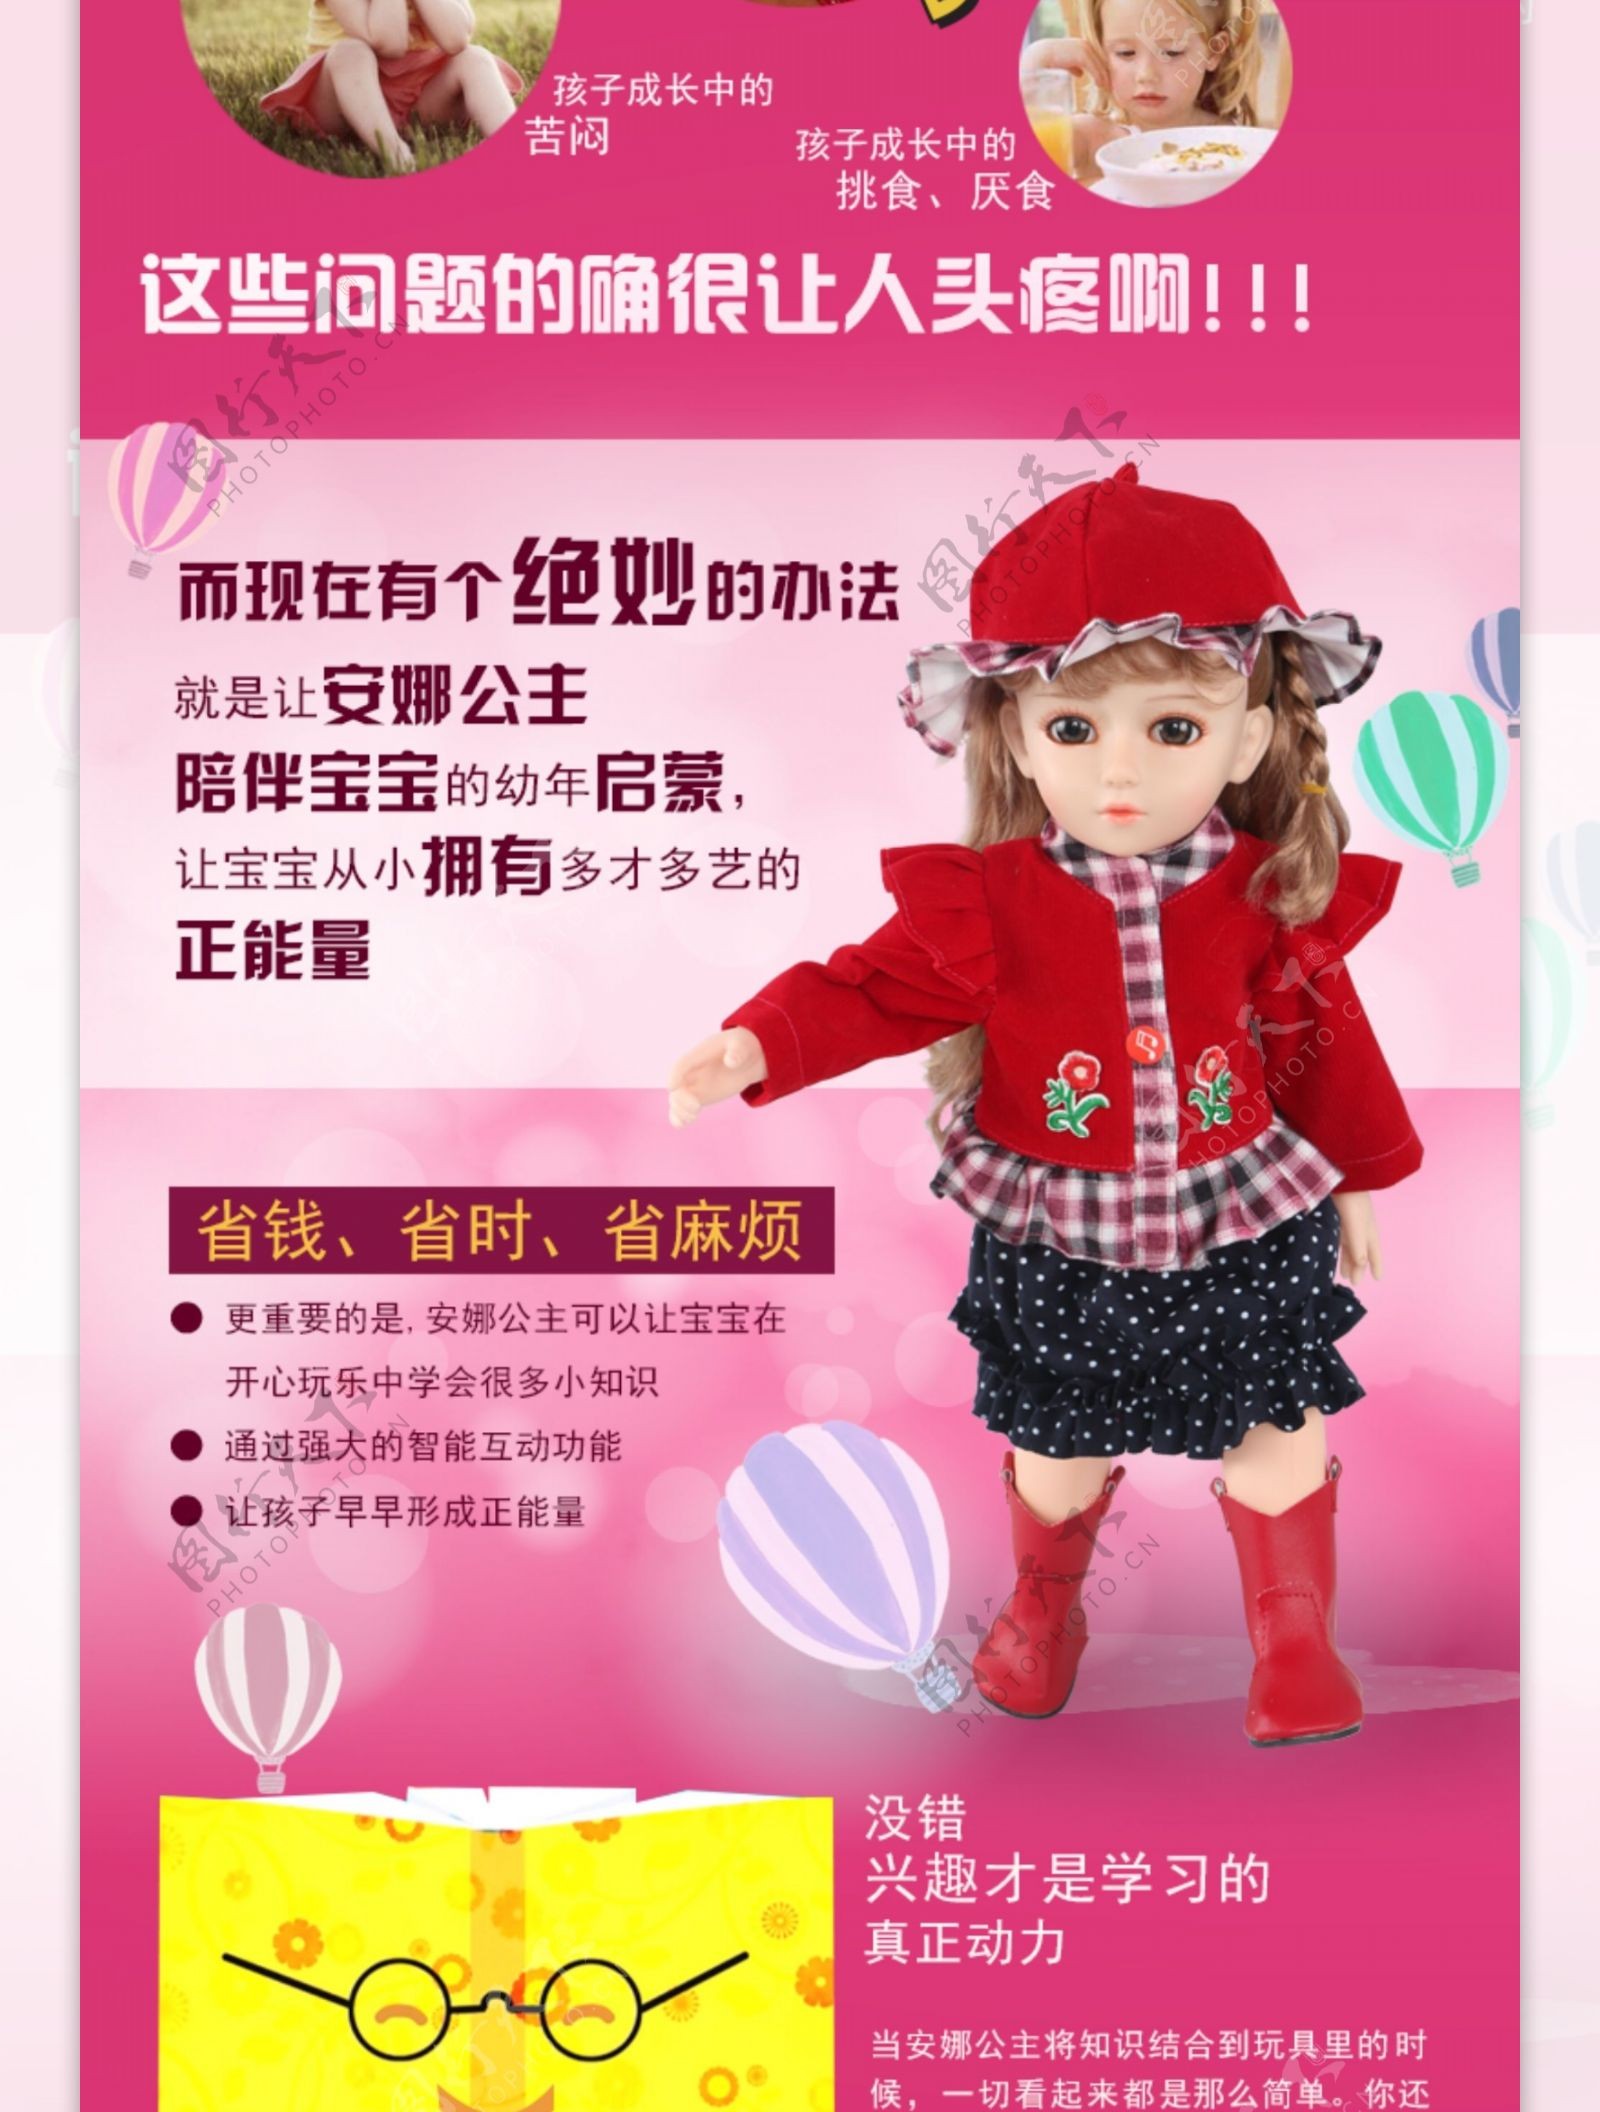 安拉公主智能玩具娃娃详情页设计